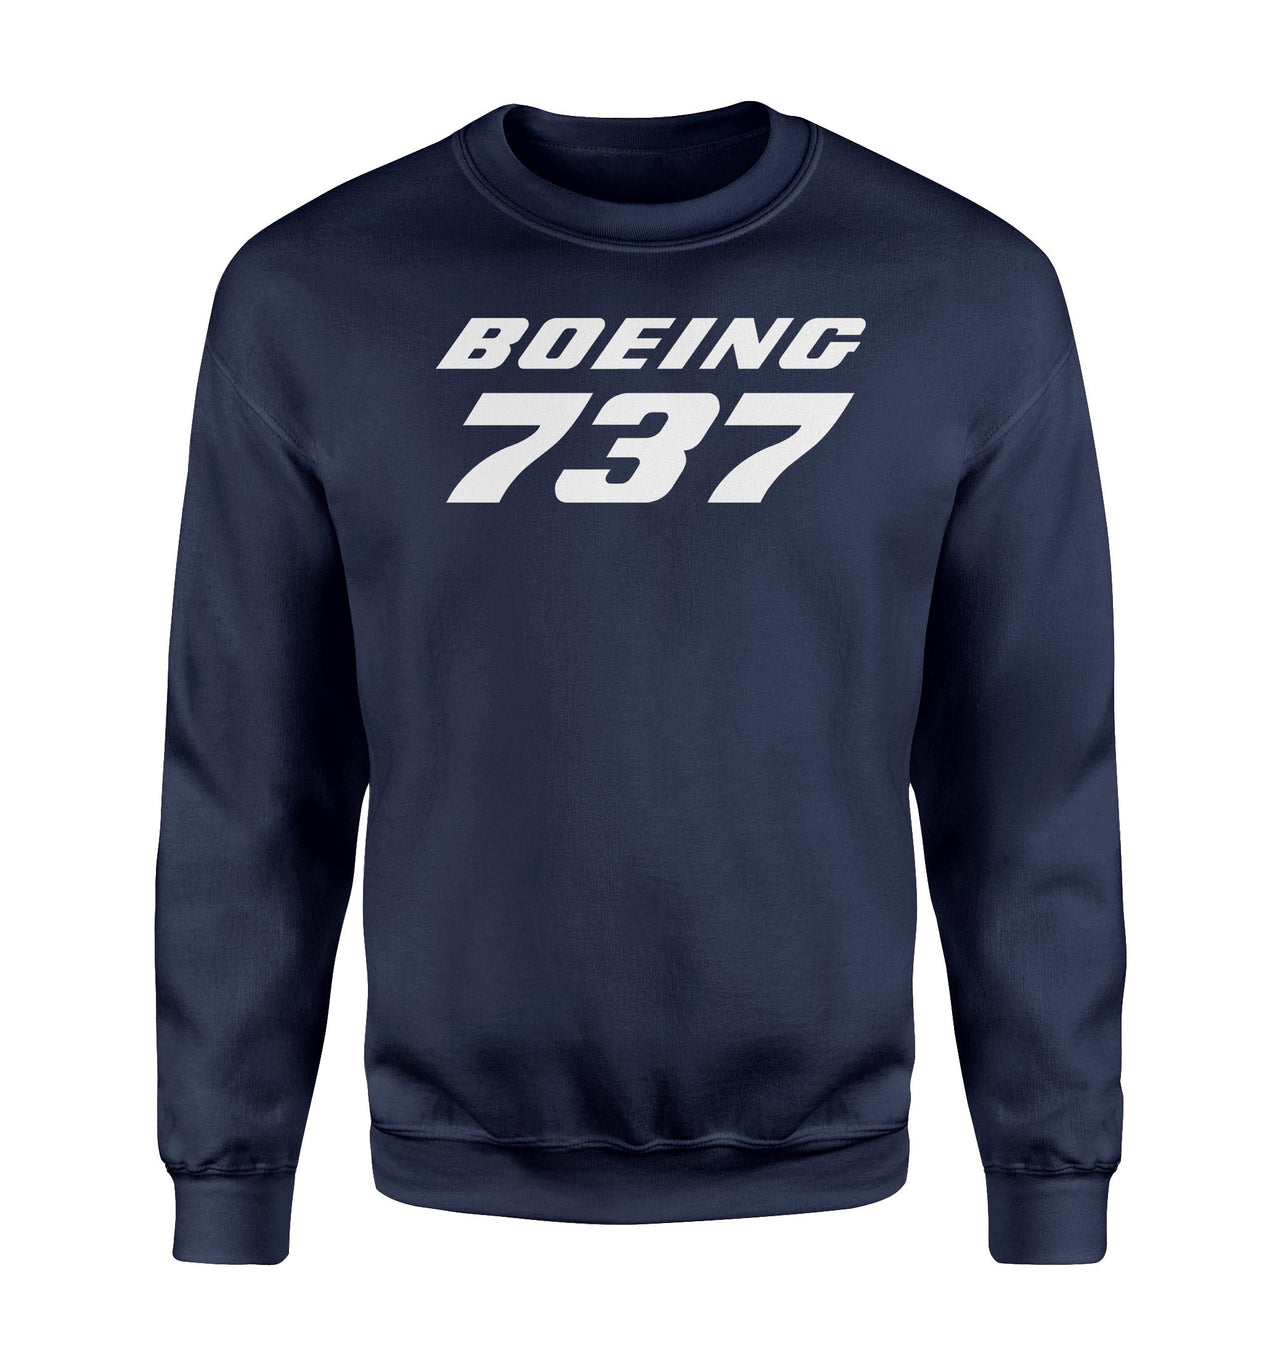 Boeing 737 & Text Designed Sweatshirts